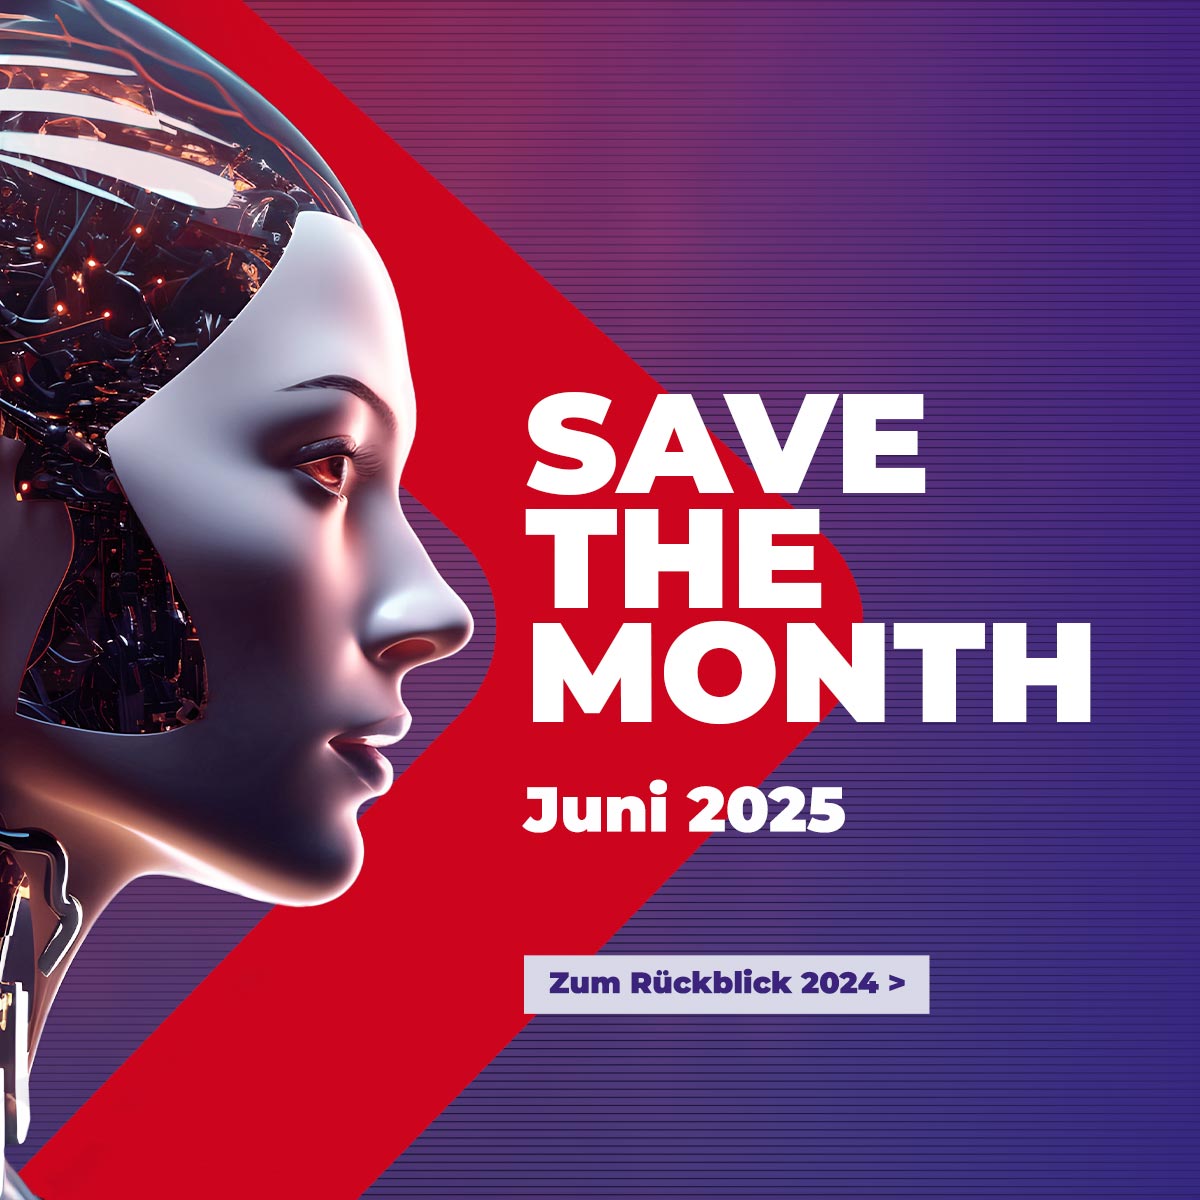 Save the Date! Der nächste erwicon findet am 18. Juni 2024 statt.